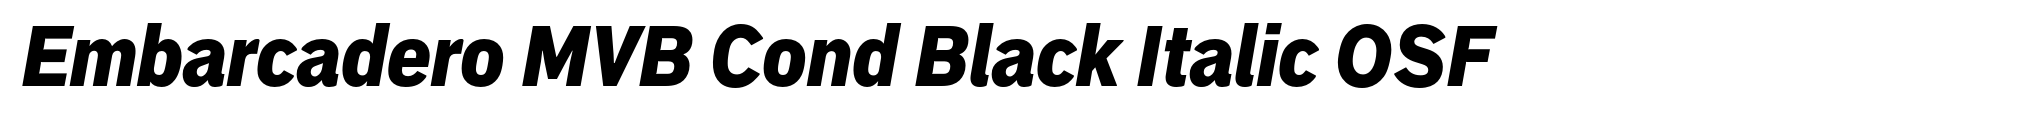 Embarcadero MVB Cond Black Italic OSF image